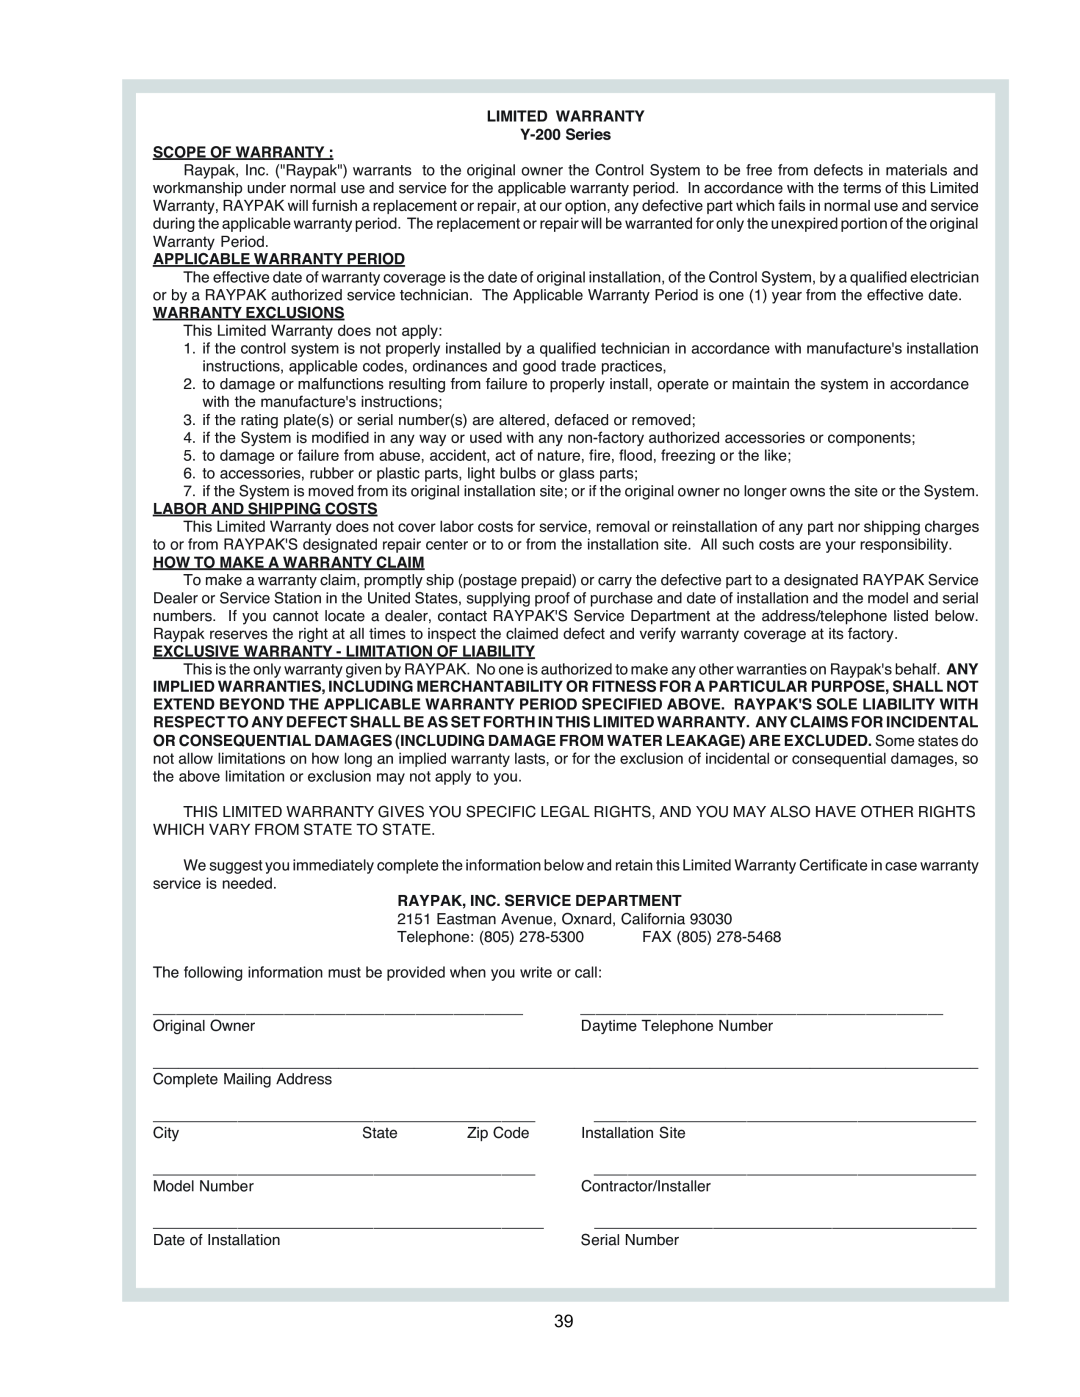 Raypak manual LIMITED WARRANTY Y-200Series SCOPE OF WARRANTY, Applicable Warranty Period, Warranty Exclusions 